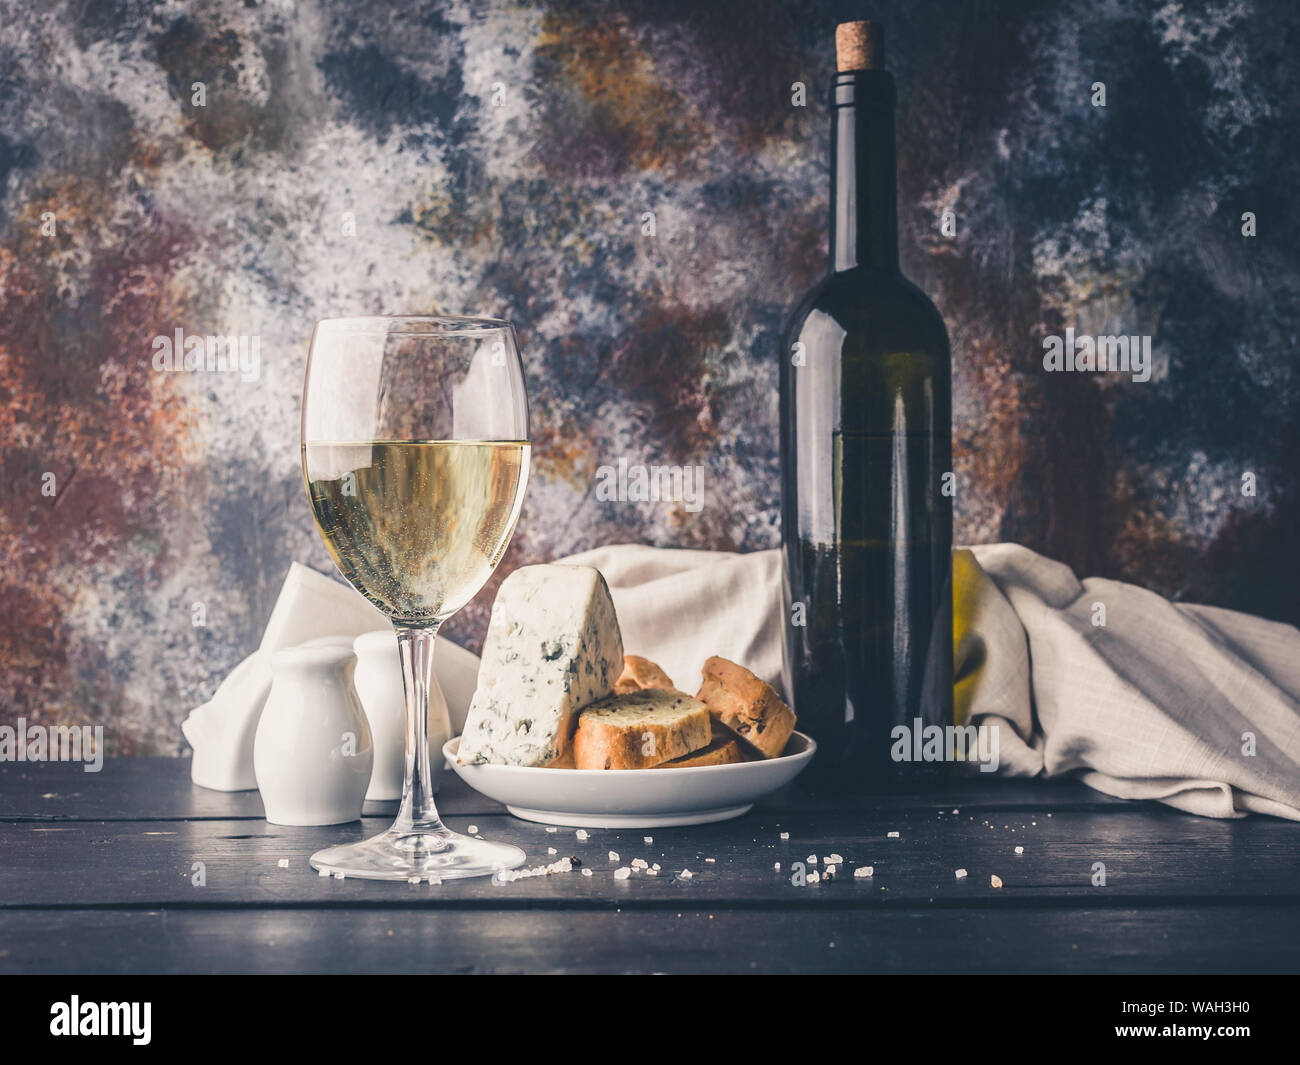 La vie encore un verre de vin blanc, du fromage, du pain et une bouteille de vin. L'éclairage à faible clés Banque D'Images